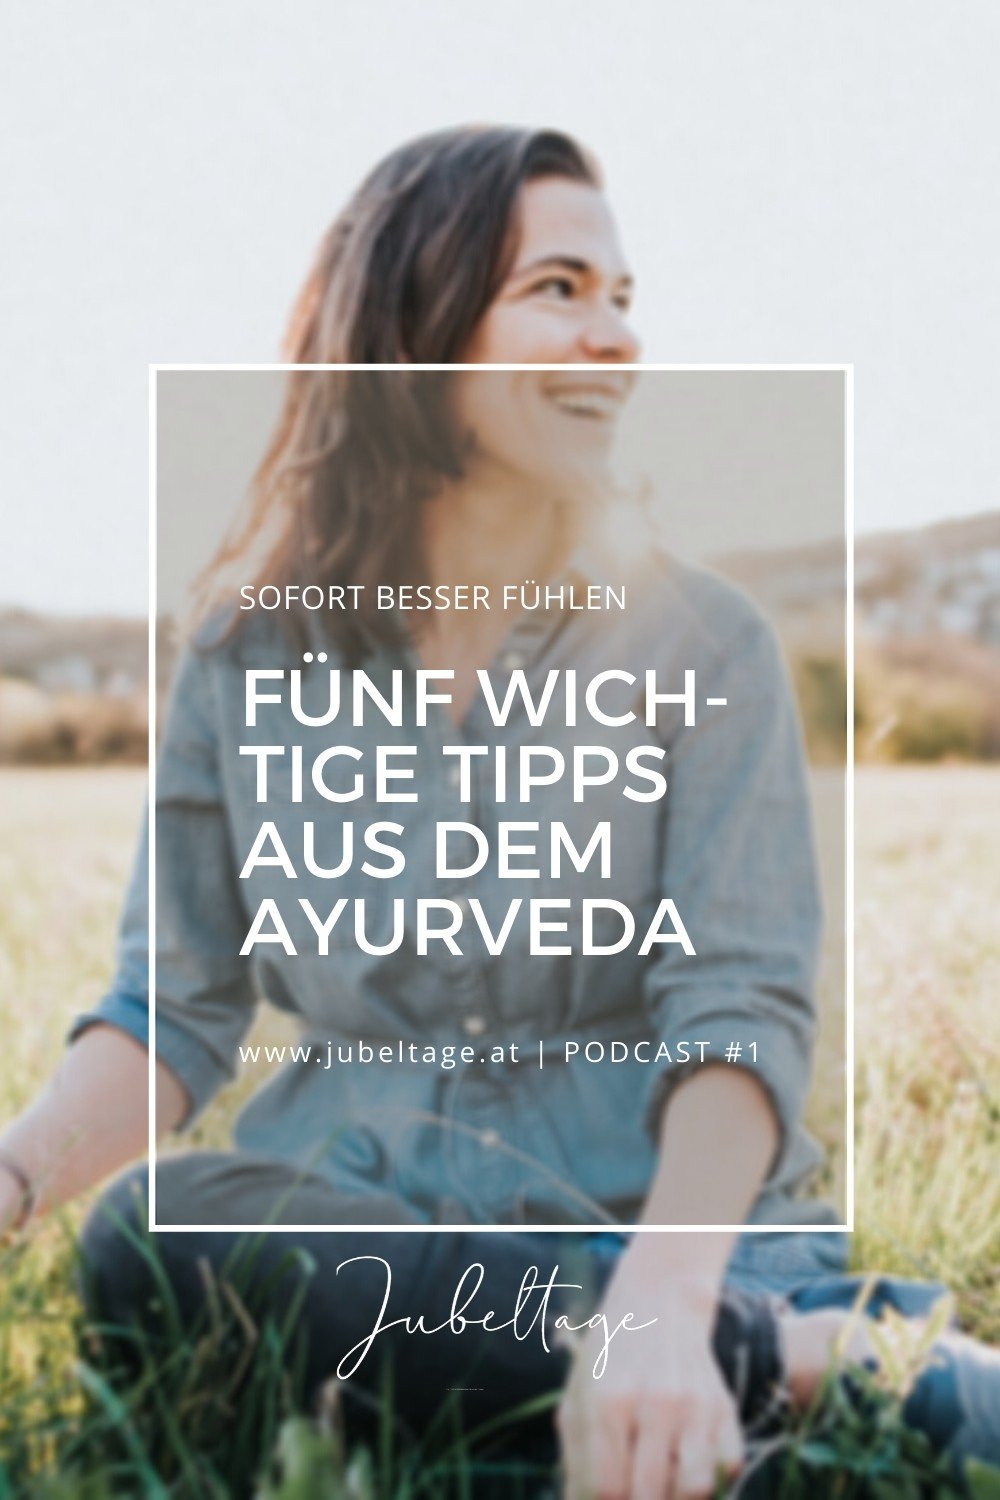 Jubeltage Podcast: Fünf wichtige Tipps aus dem Ayurveda